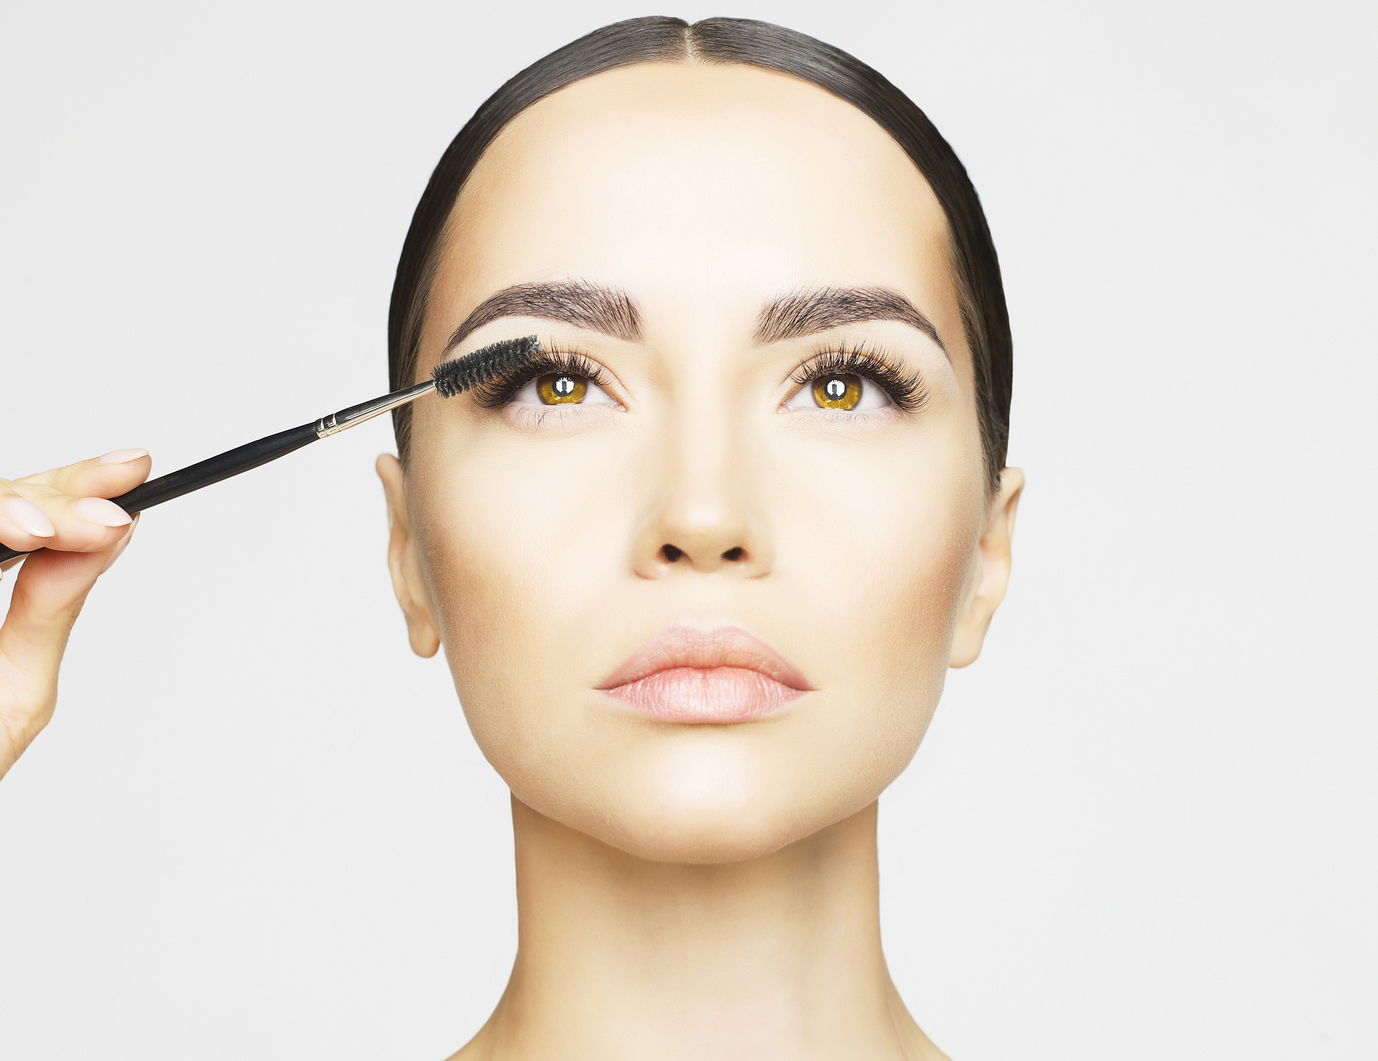 Démonstration Esthétique : Les Do & Don’t Makeup à partir de 40 ans